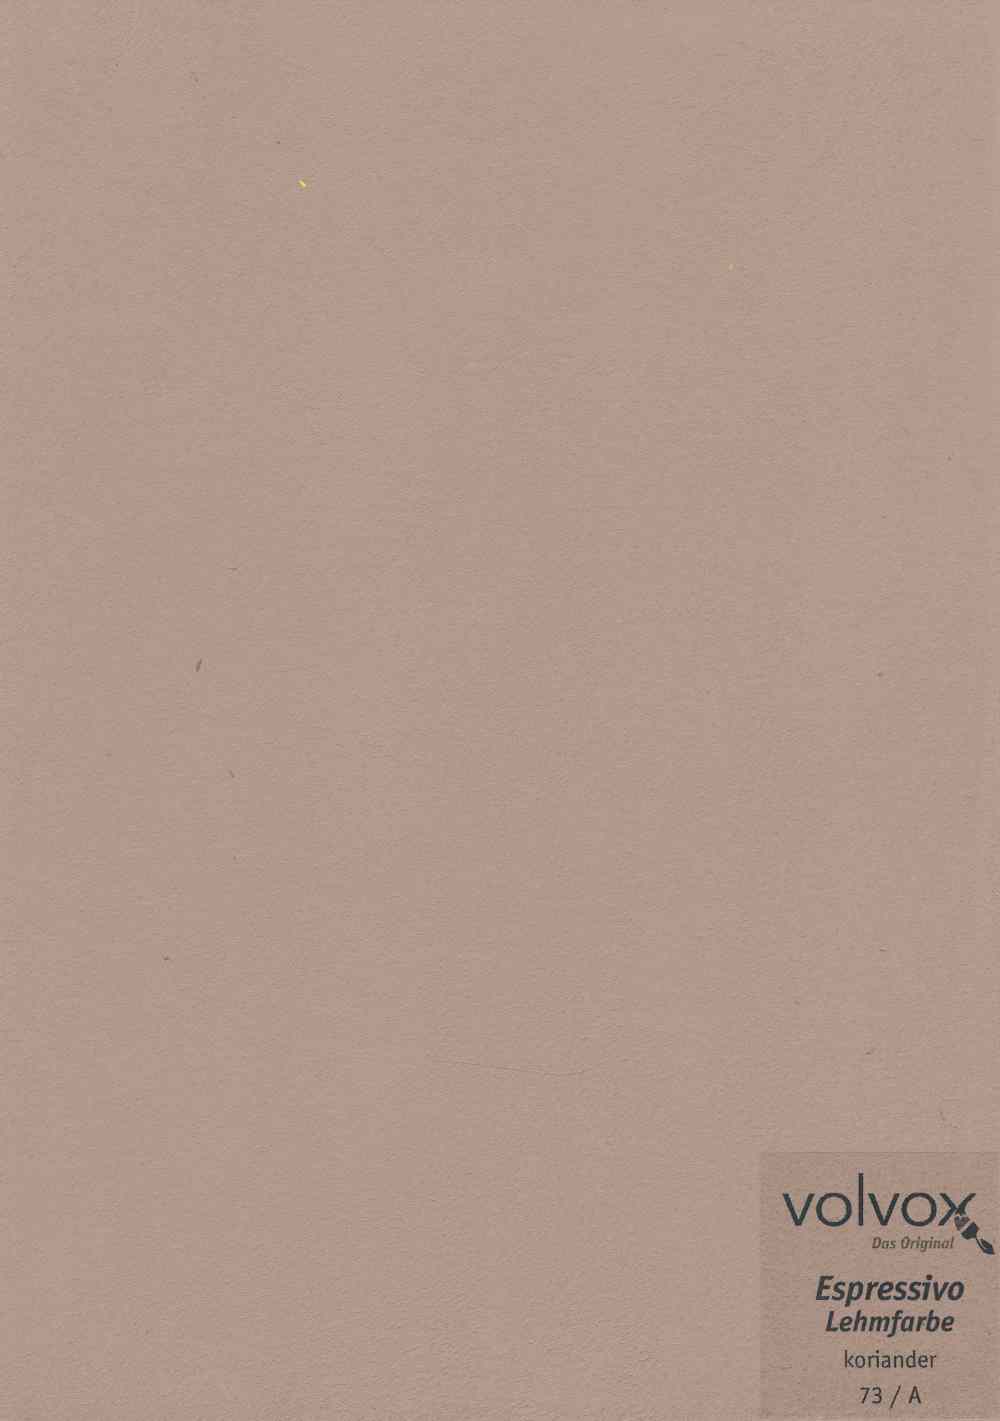 Volvox Espressivo Lehmfarbe 073 koriander · 2,5ltr. 